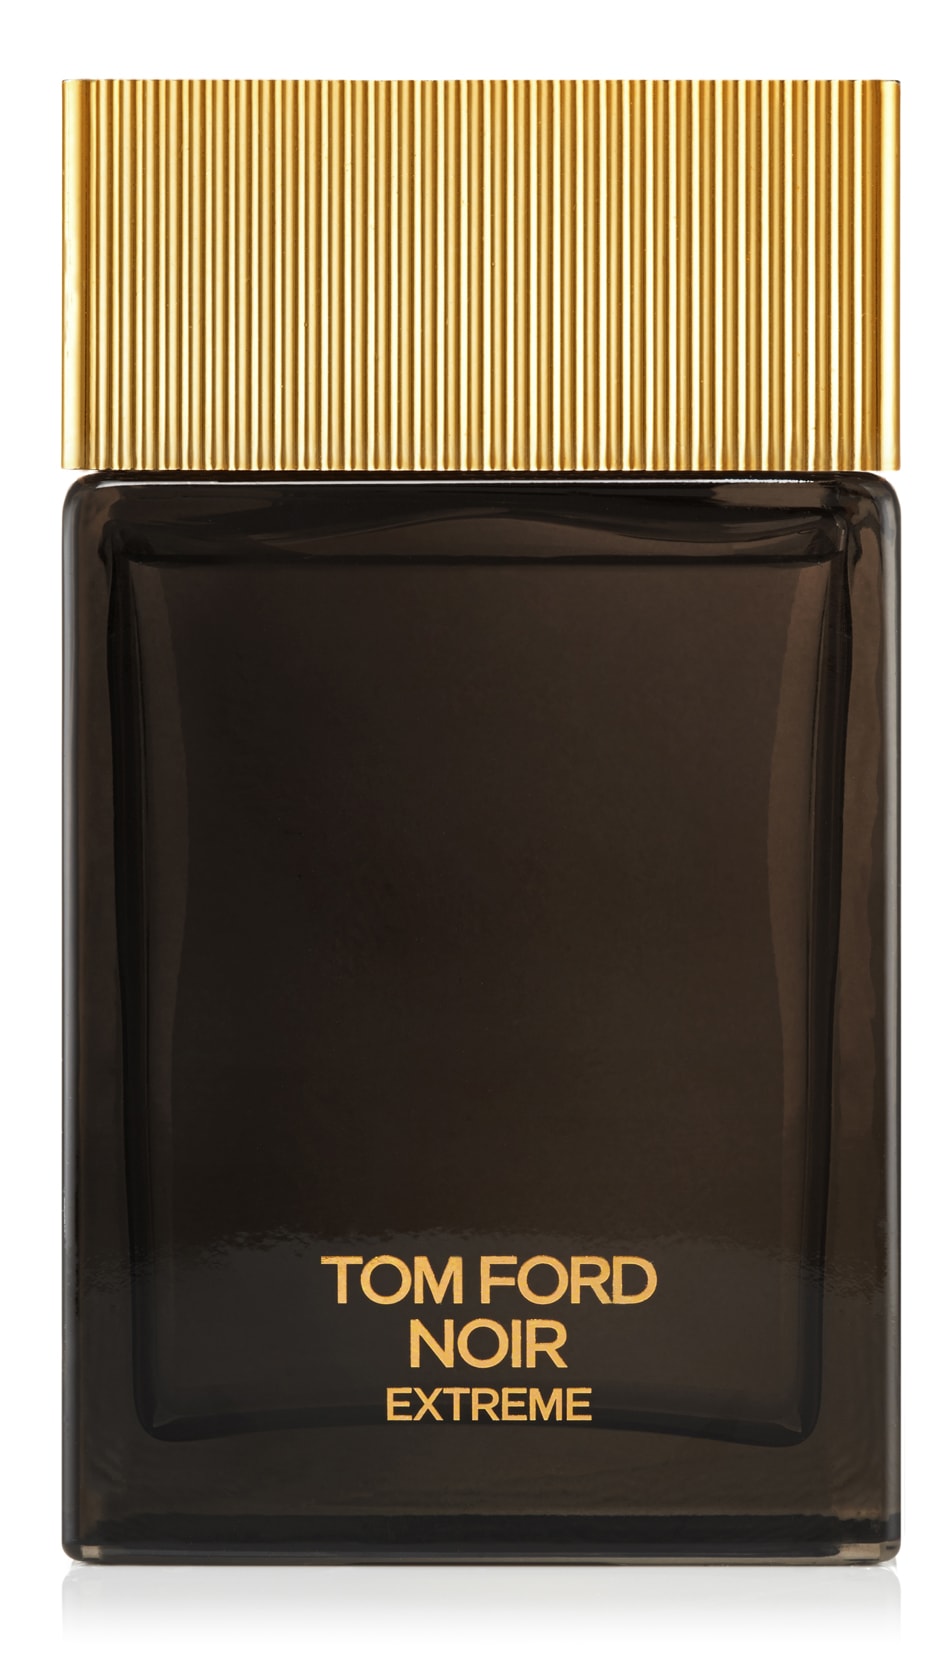 Tom Ford MEN'S SIGNATURE FRAGRANCES Noir Extreme Eau de Parfum Nat. Spray 